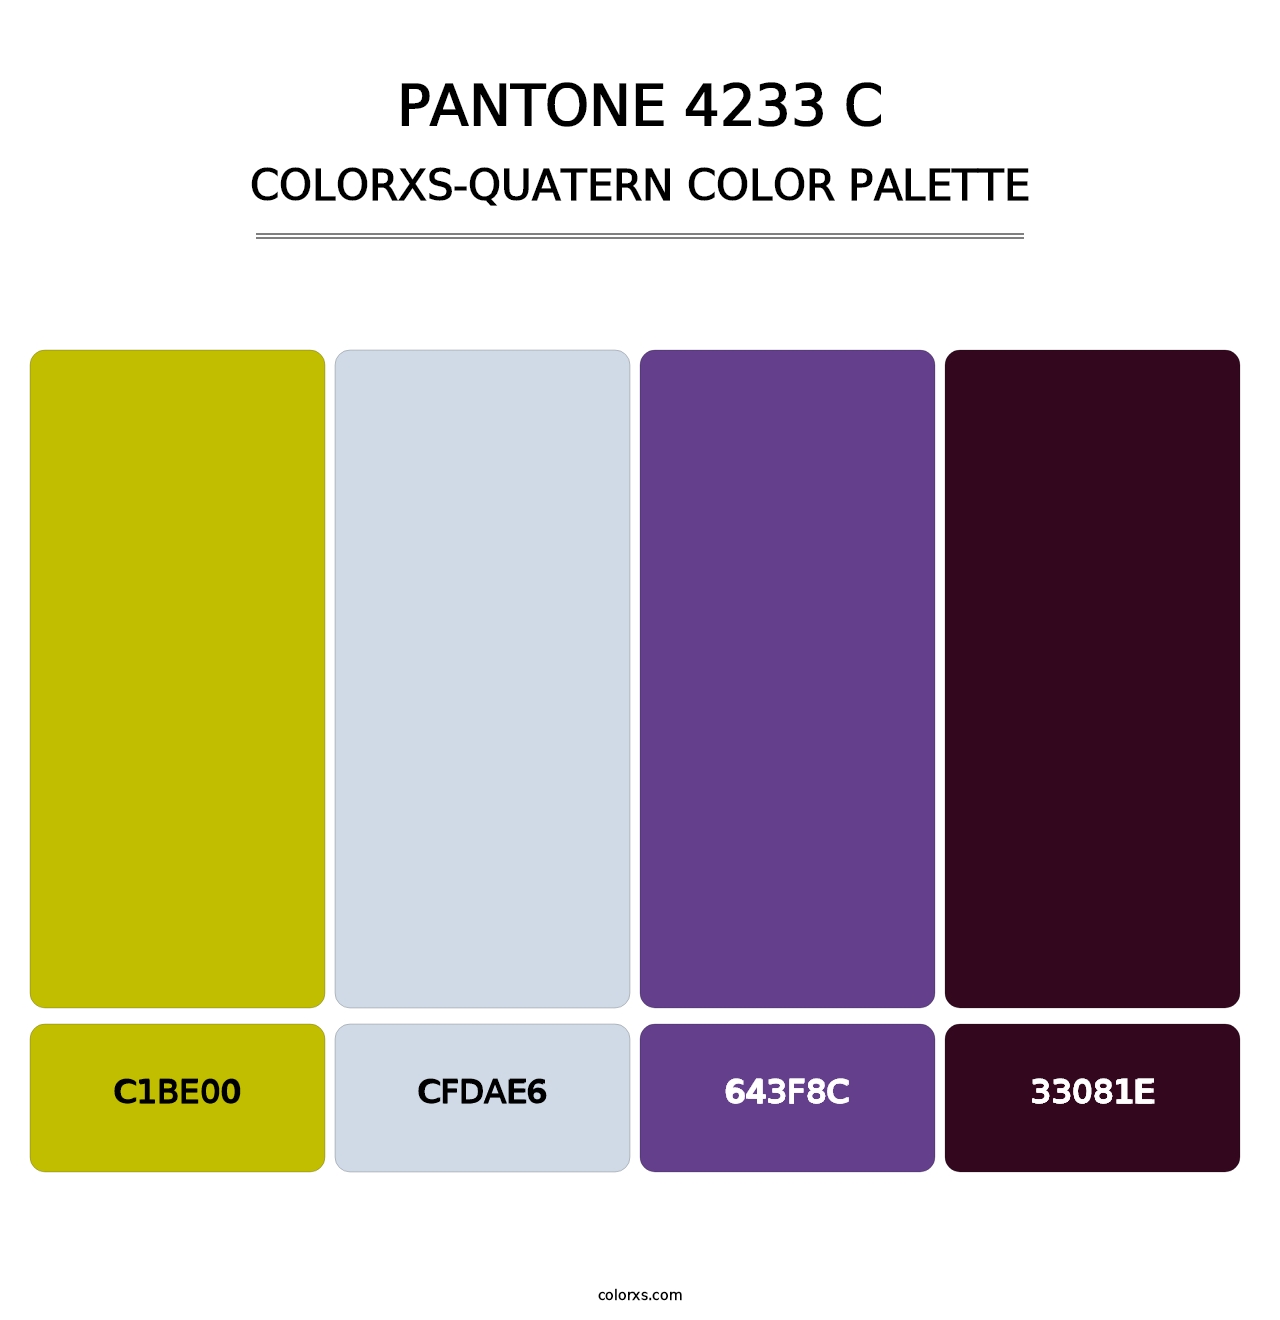 PANTONE 4233 C - Colorxs Quatern Palette